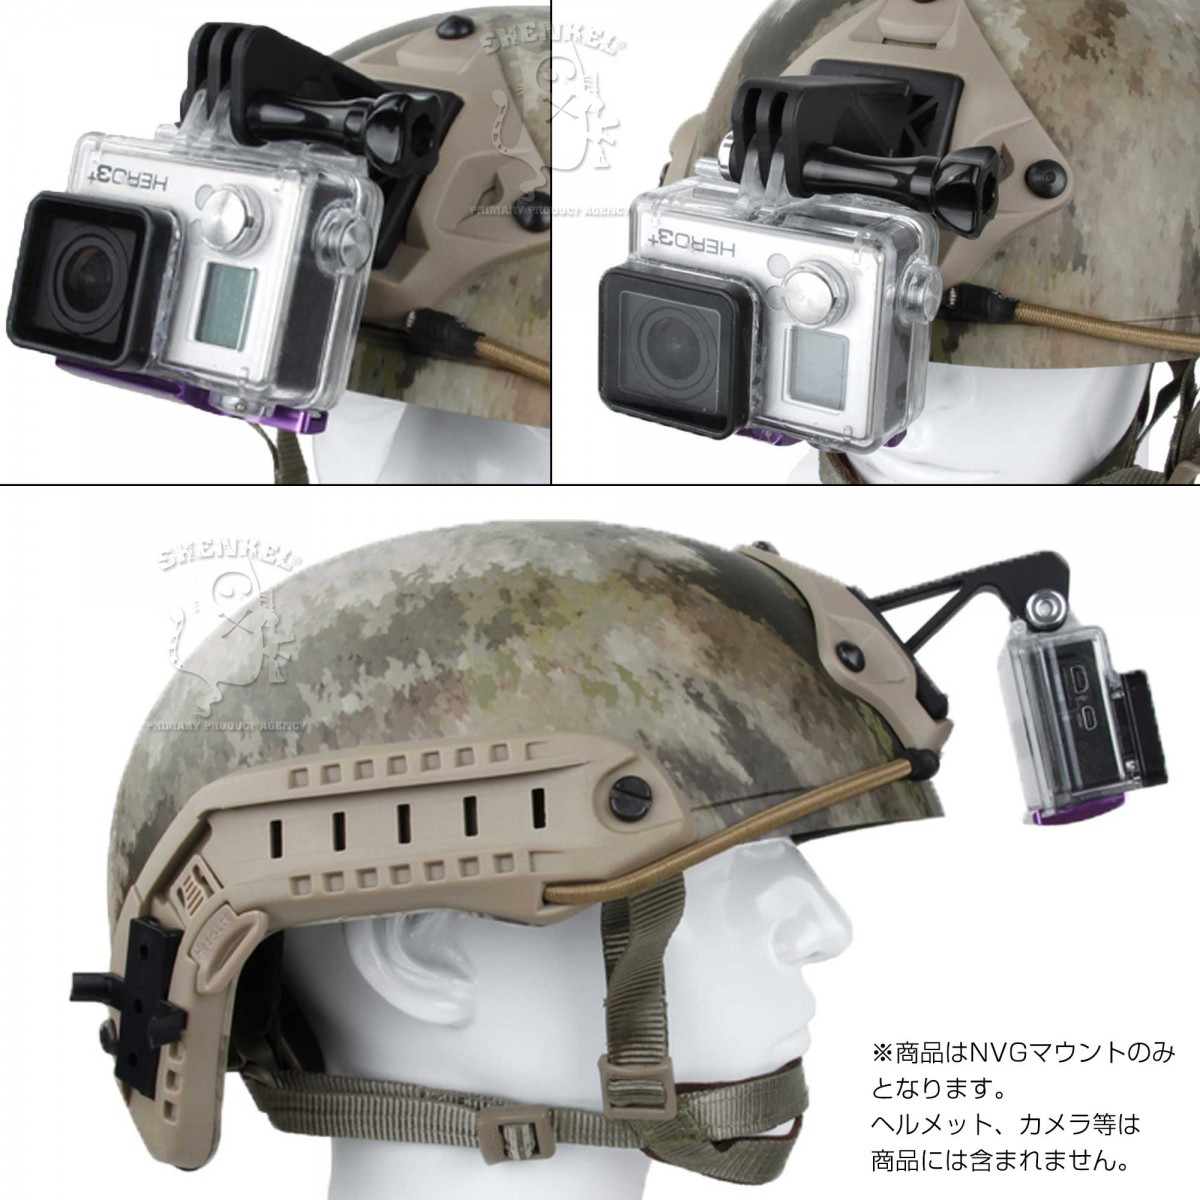 SHENKEL GoPro NVGマウント ウェアラブルカメラ用アクセサリ FASTヘルメット対応 (BK ブラック/TAN タン) ナイトビジョンマウント サバゲー装備 サバイバルゲーム 